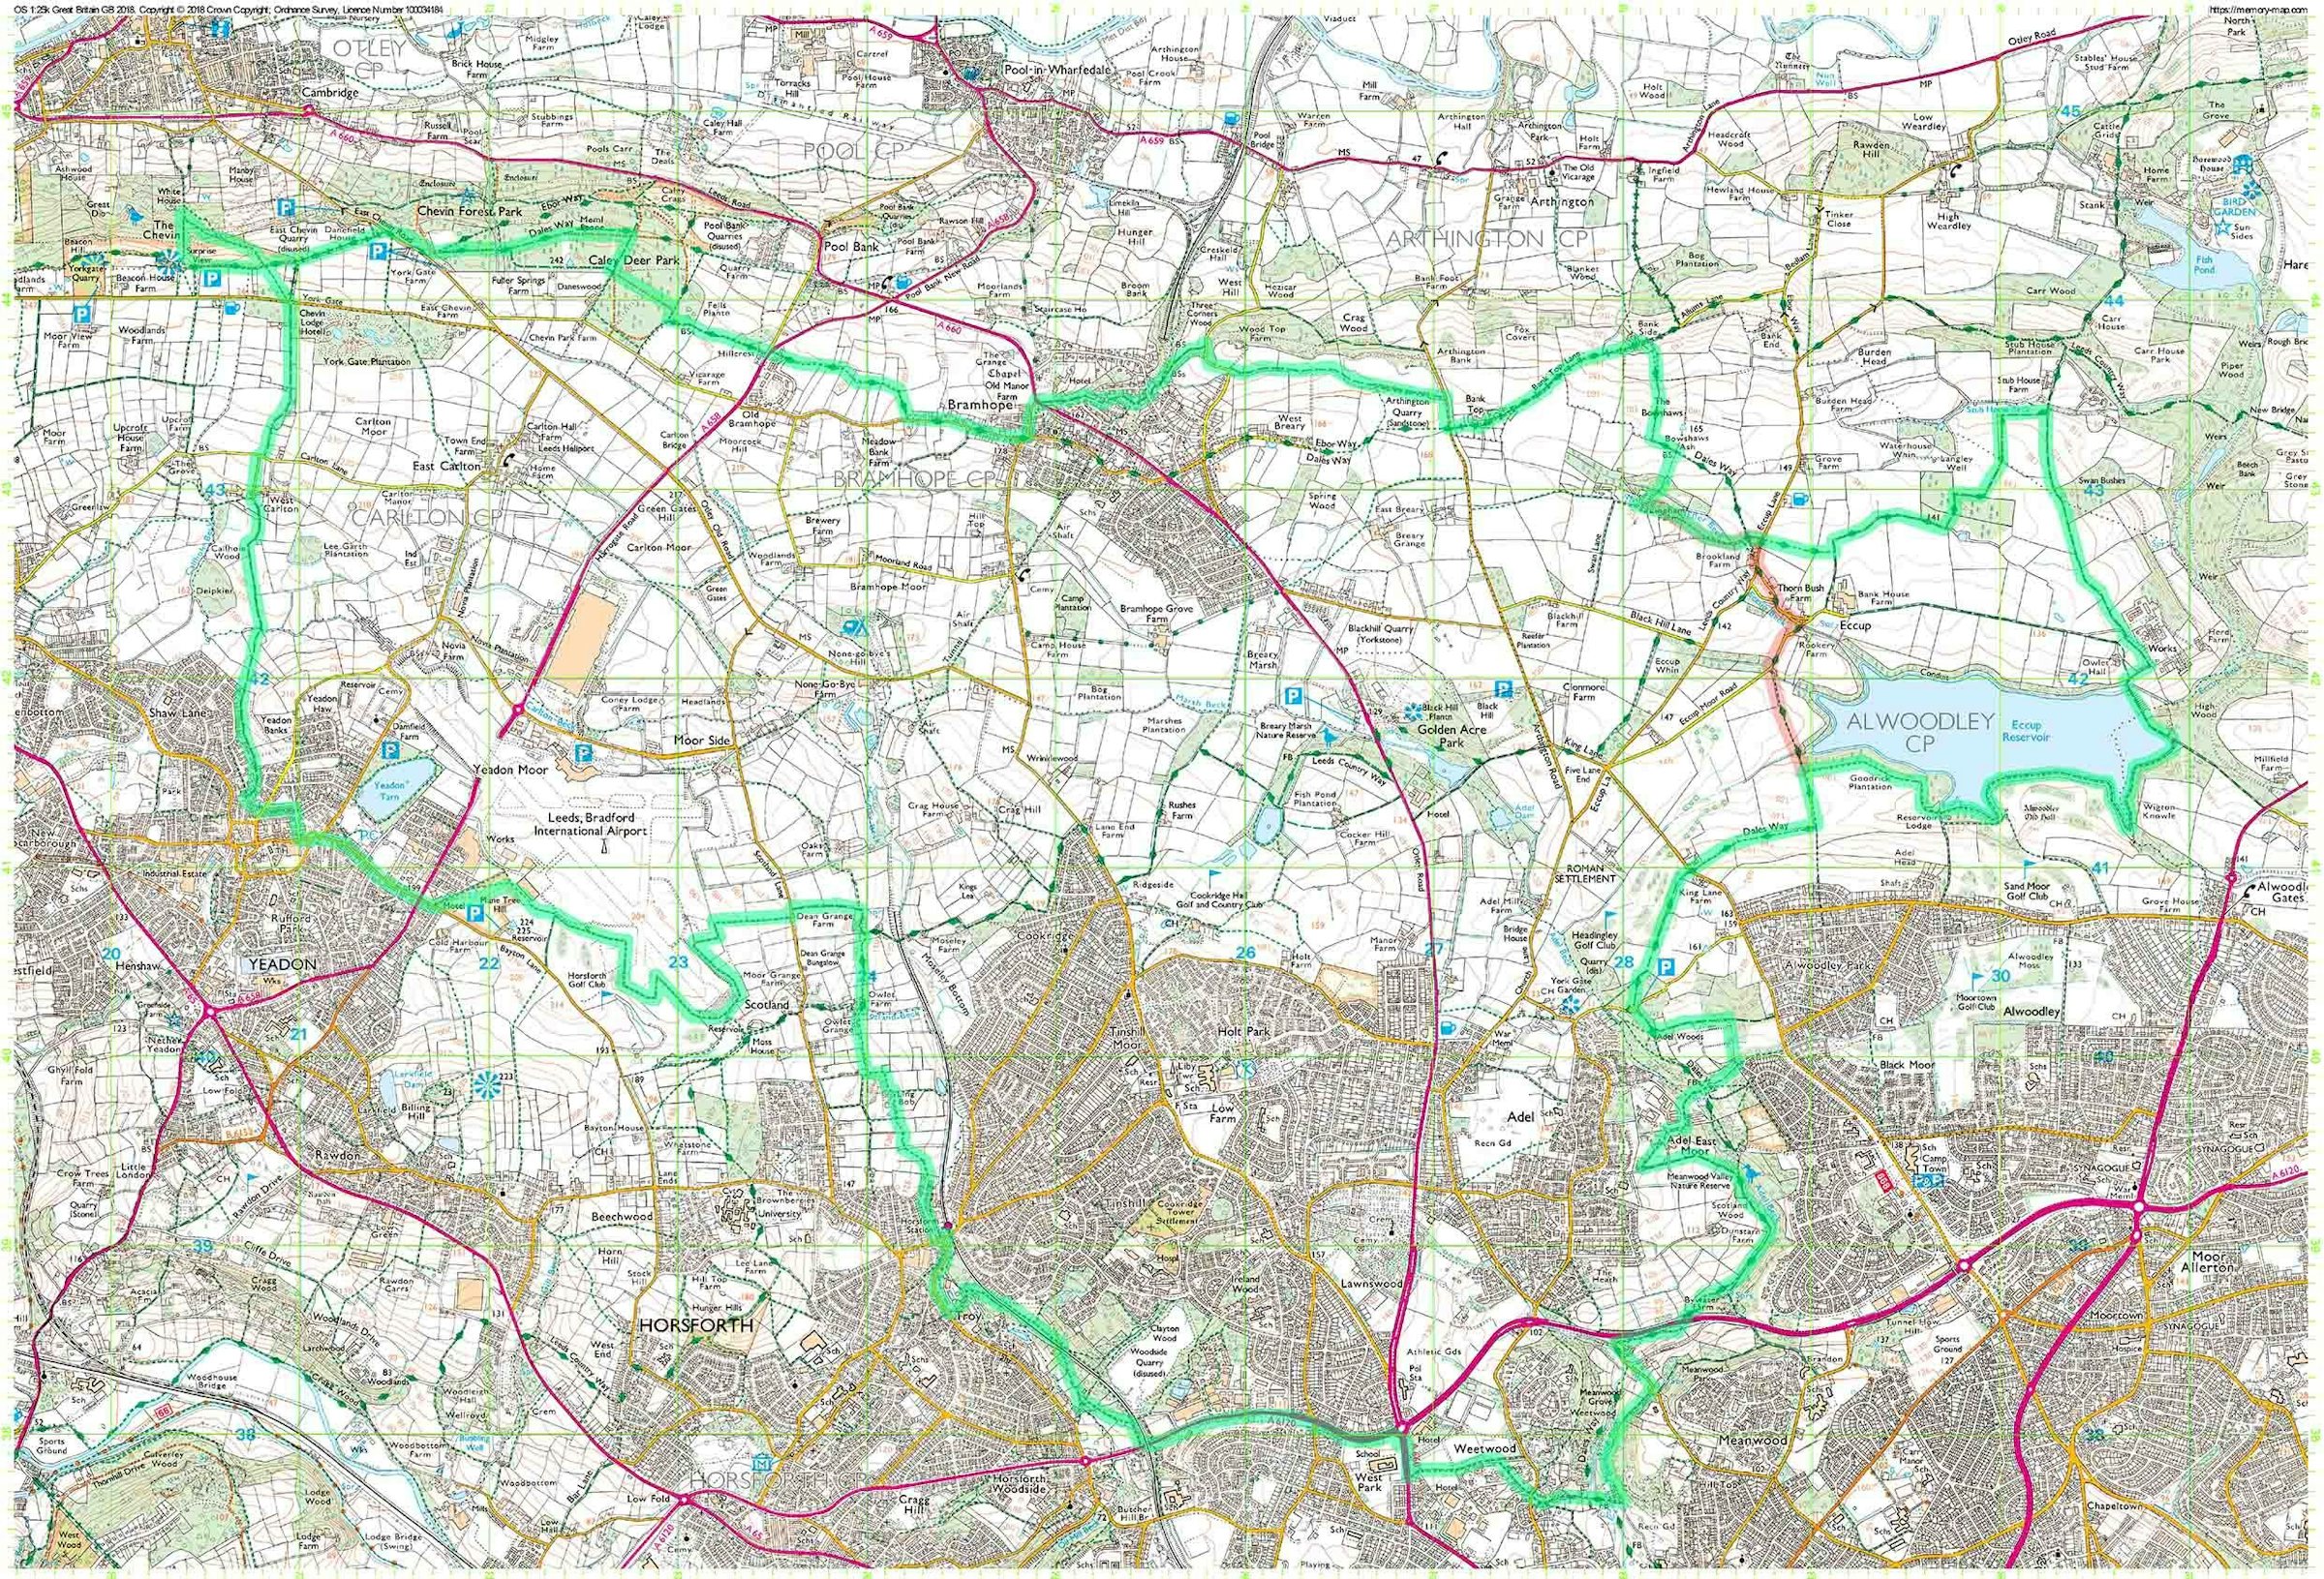 Great Leeds Walk Full Map Jpg 3d943a ?fit=max&w=1200&auto=format&q=62&dpr=2